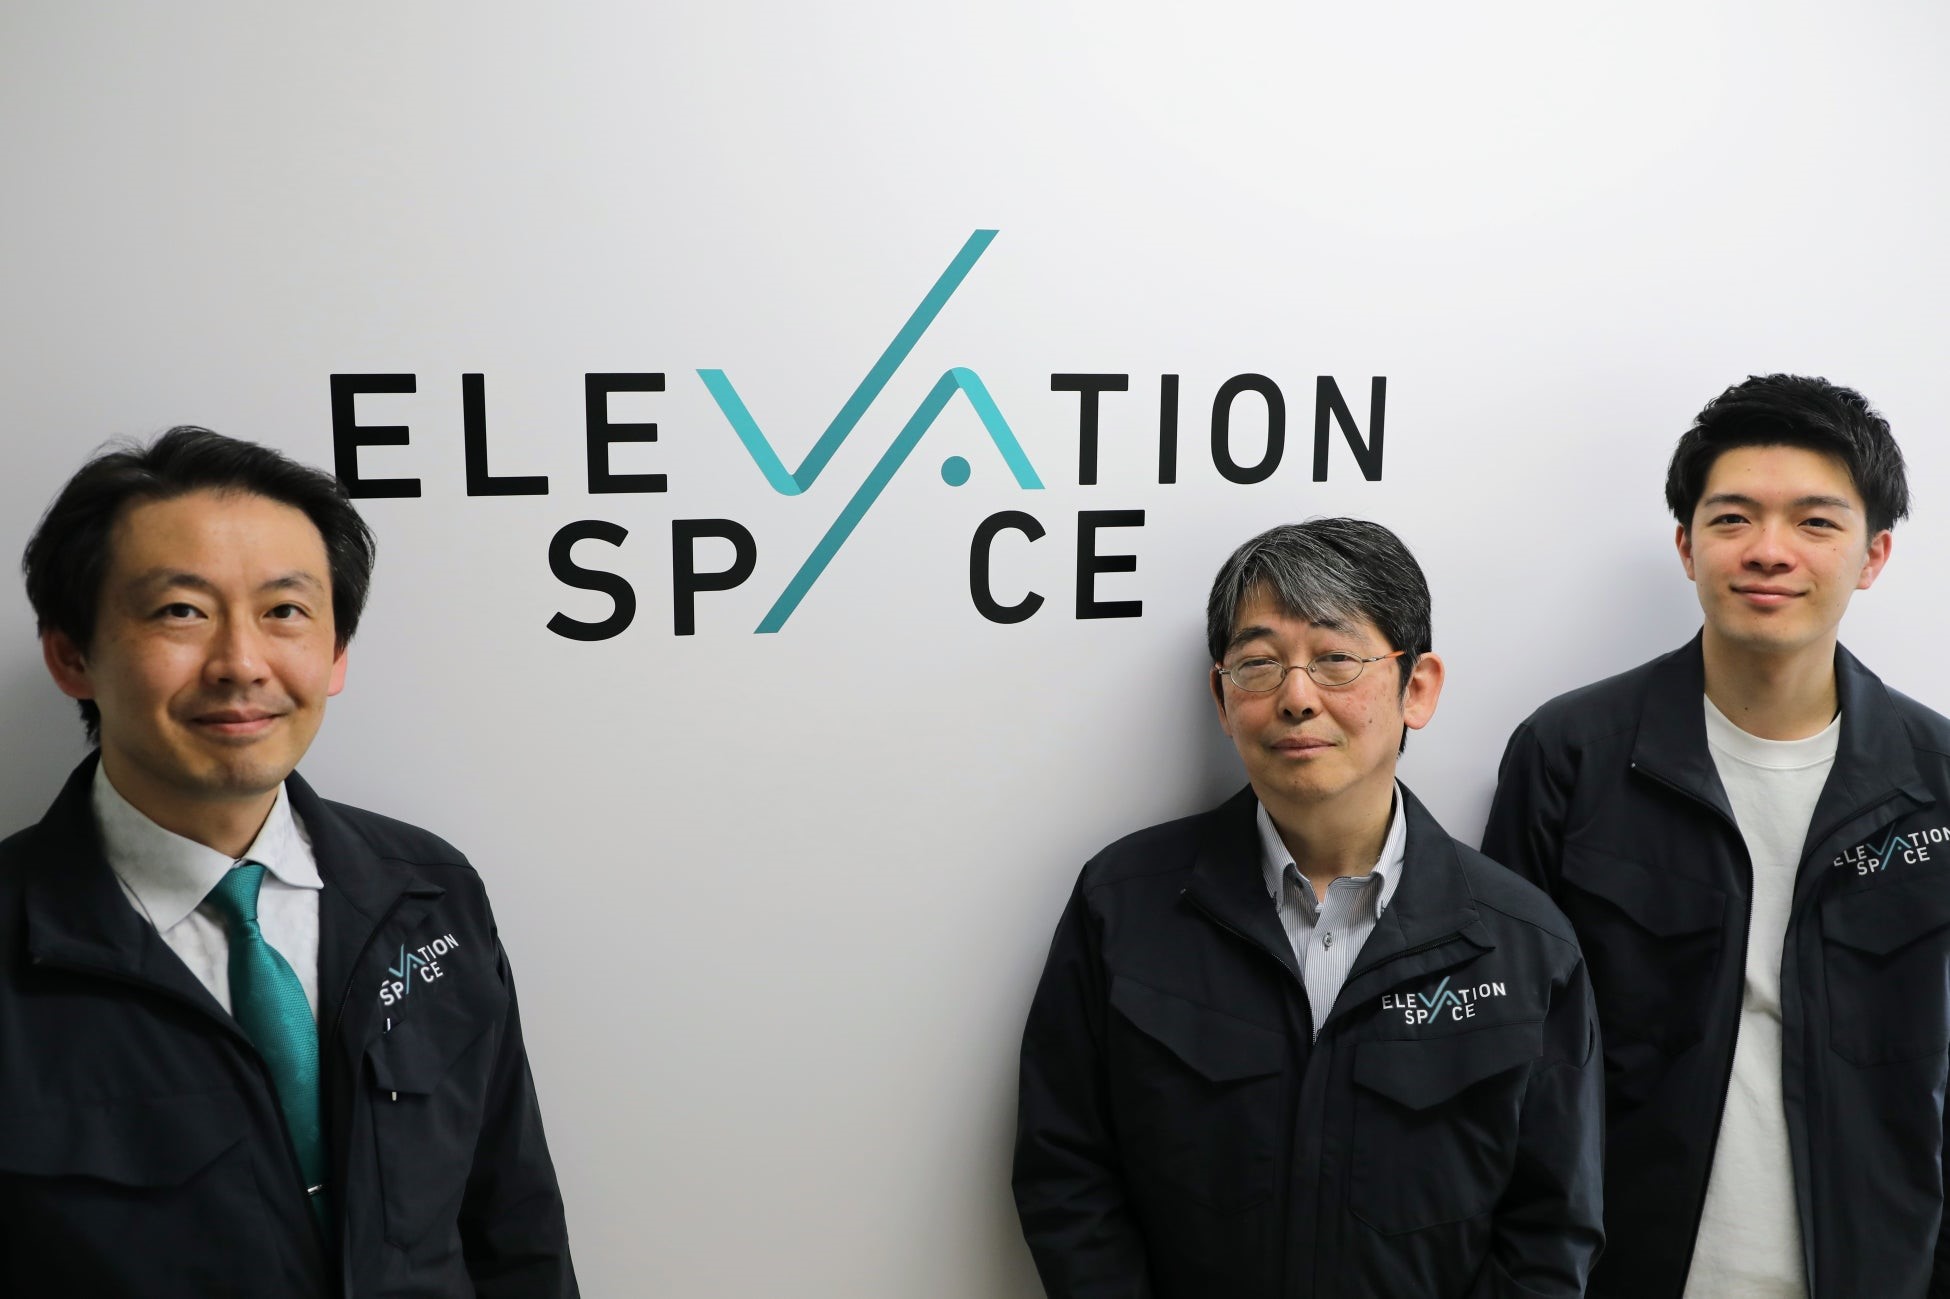 元JAXAで大気圏再突入技術の第一人者・藤田和央氏が宇宙スタートアップのElevationSpaceに参画